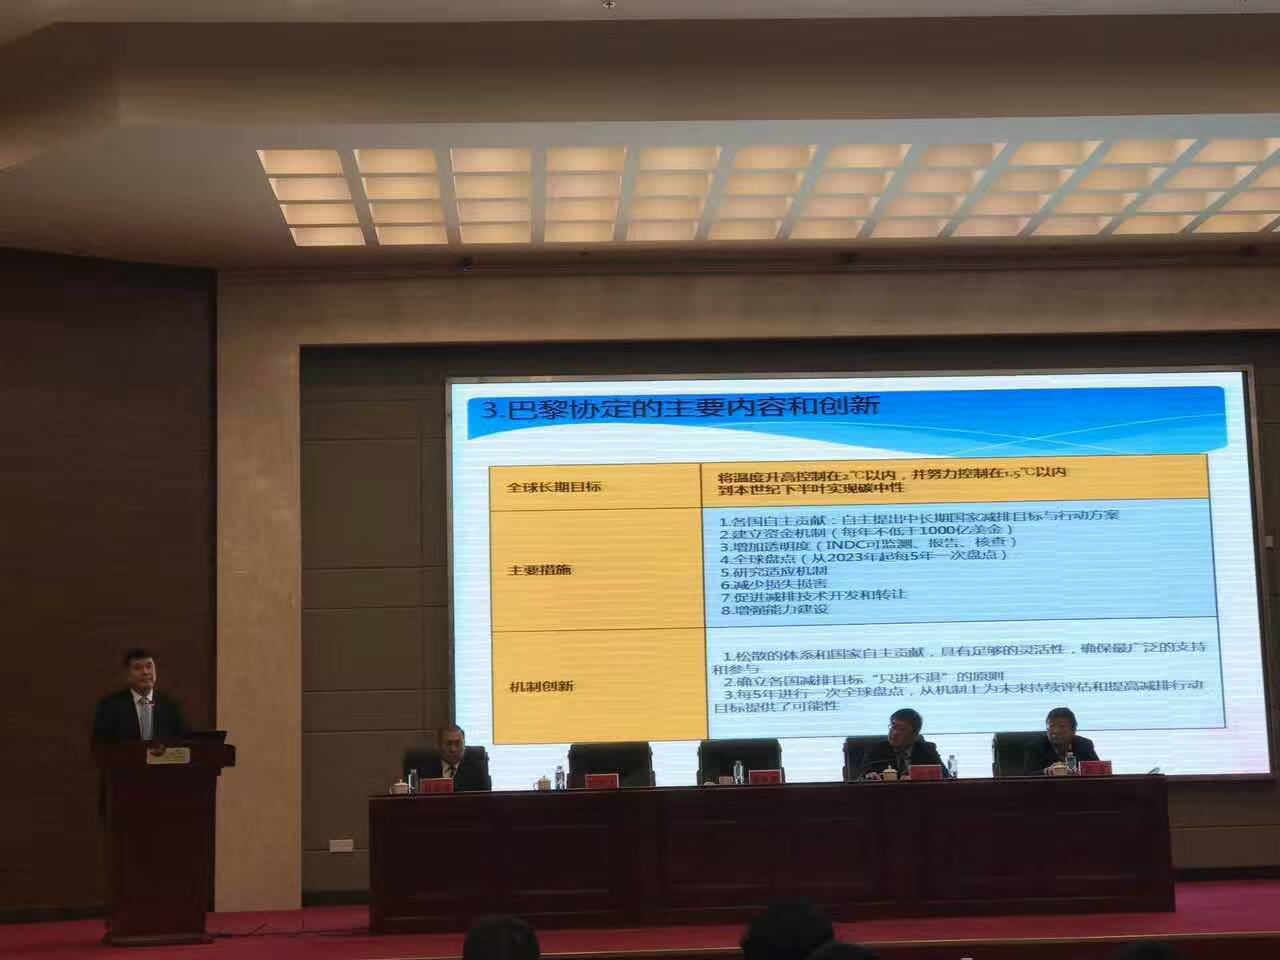  国发改委应对气候变化司副司长蒋兆理发表致辞